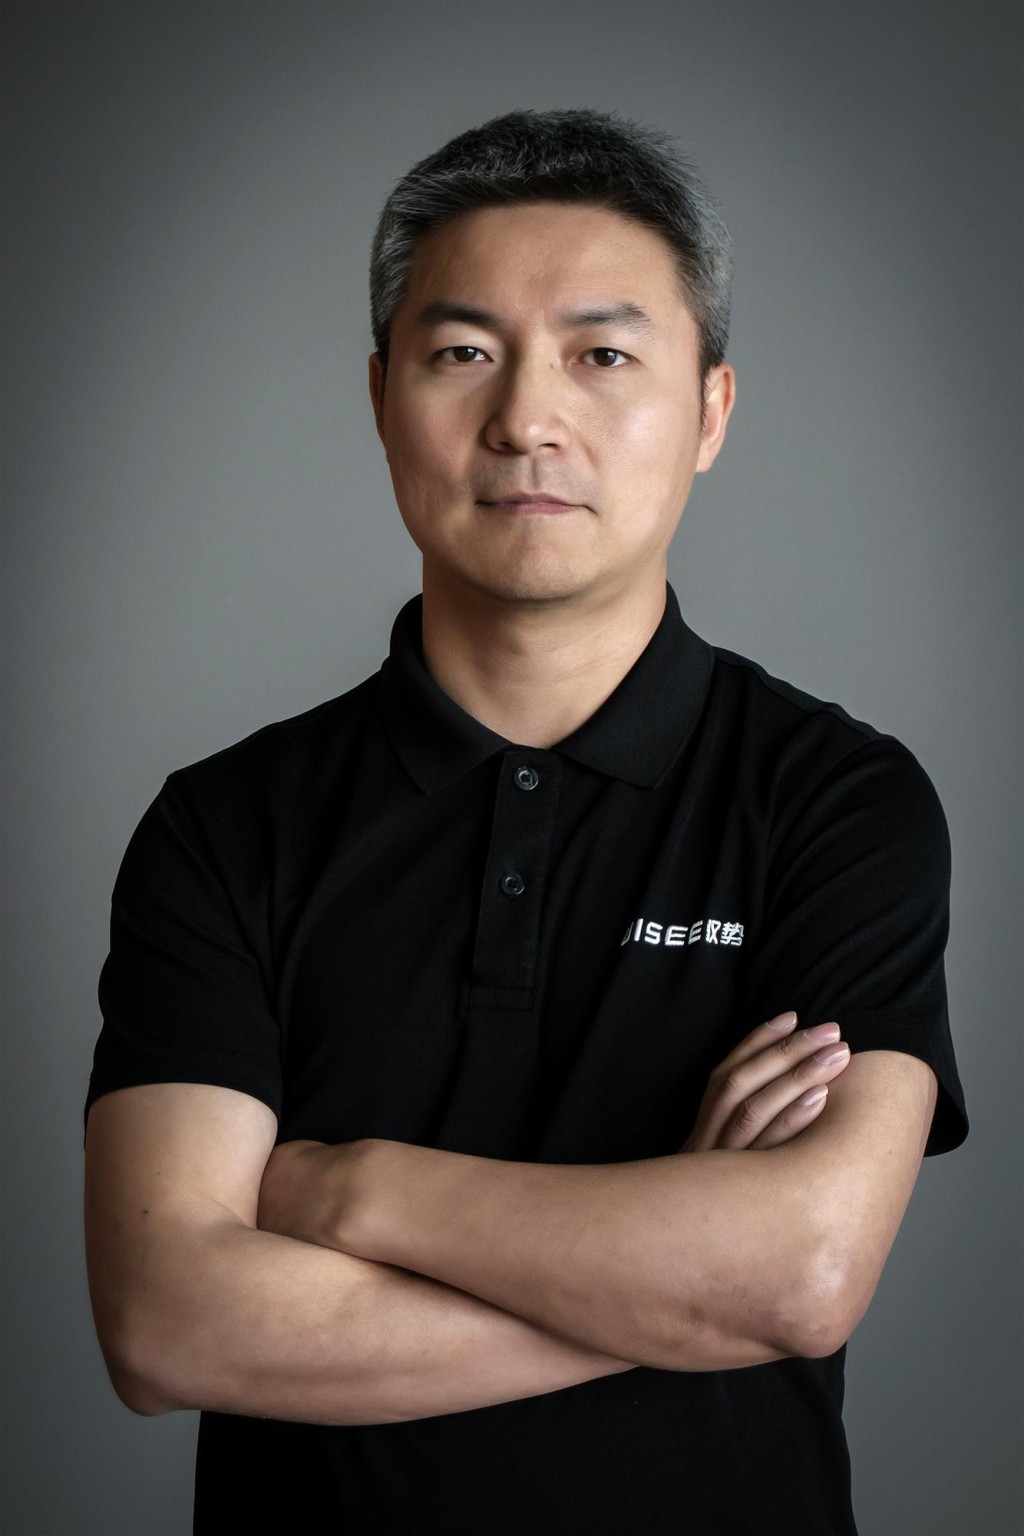 驭势科技联合创始人、董事长兼首席执行官吴甘沙。他为前任Intel Labs China总裁及Intel首席工程师。